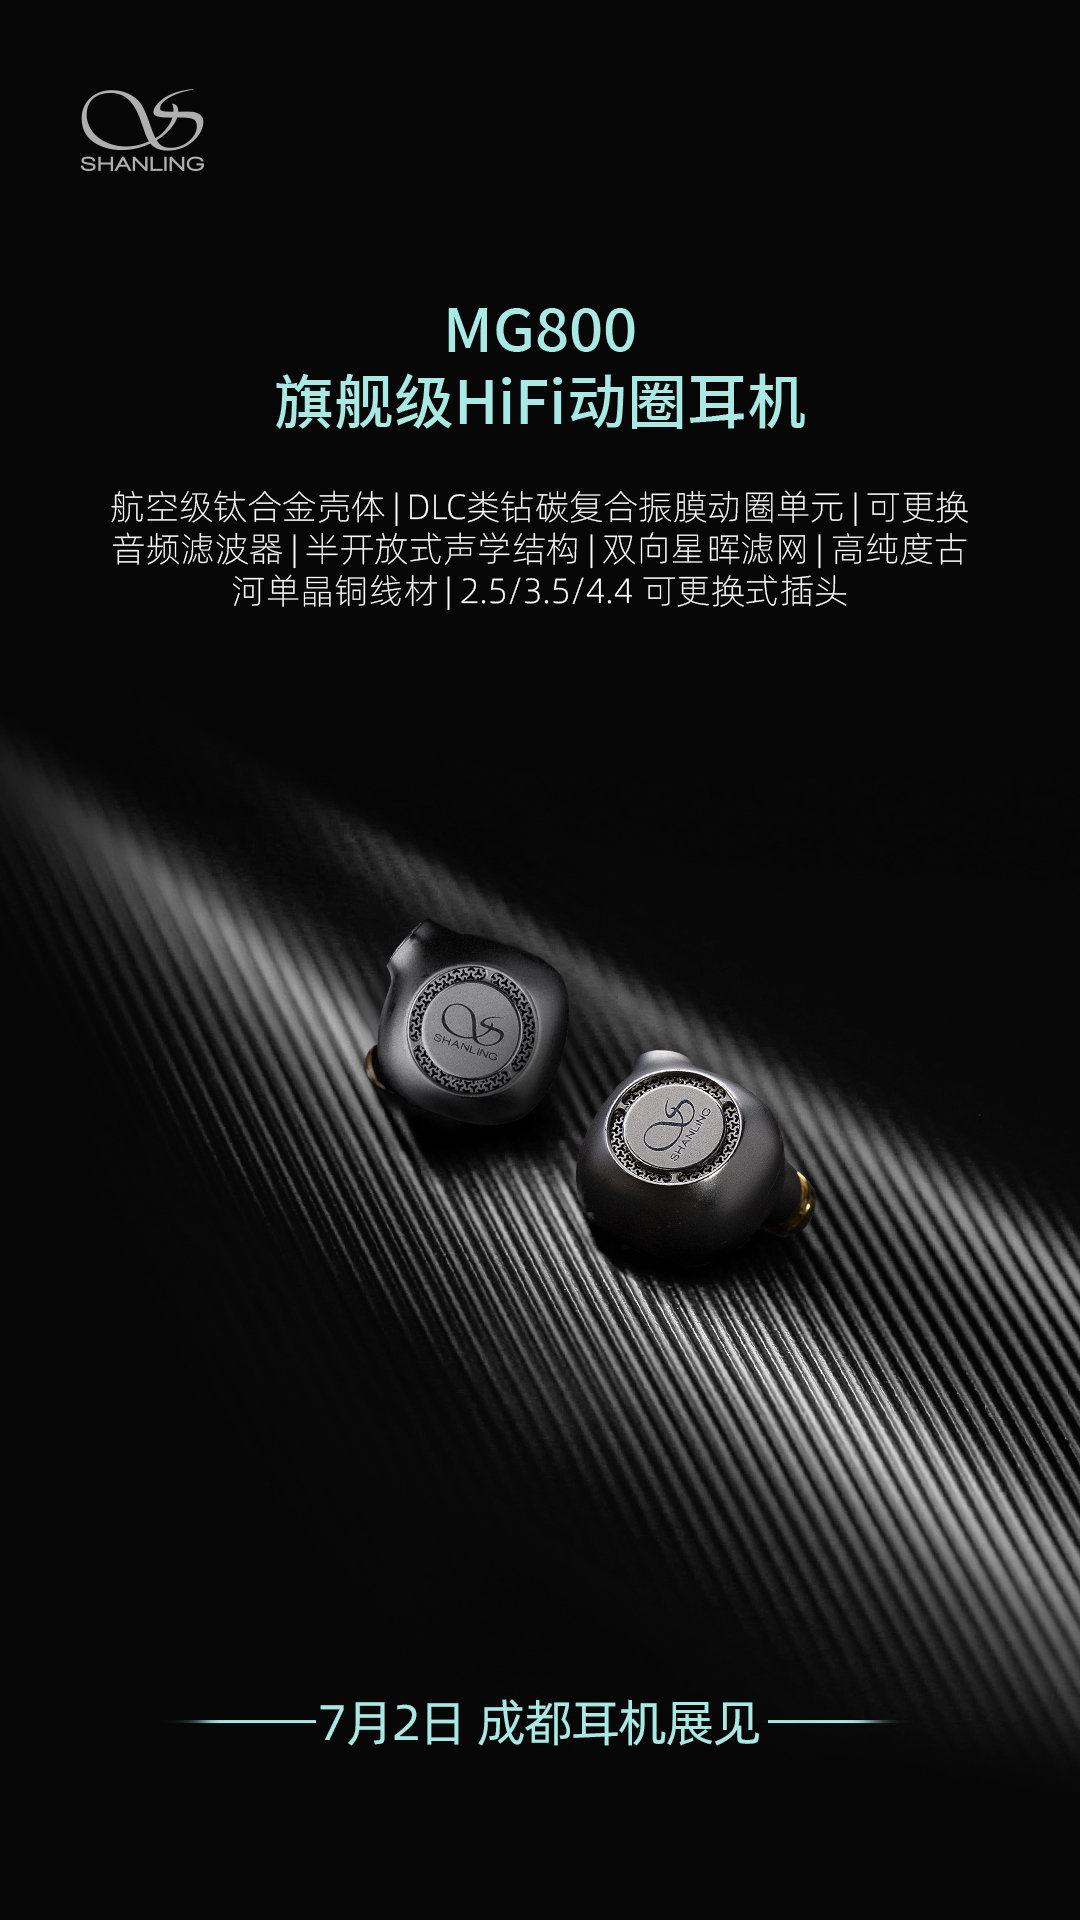 山灵公布新款 MG800 旗舰级动圈耳机：全新DLC动圈单元、钛合金壳体